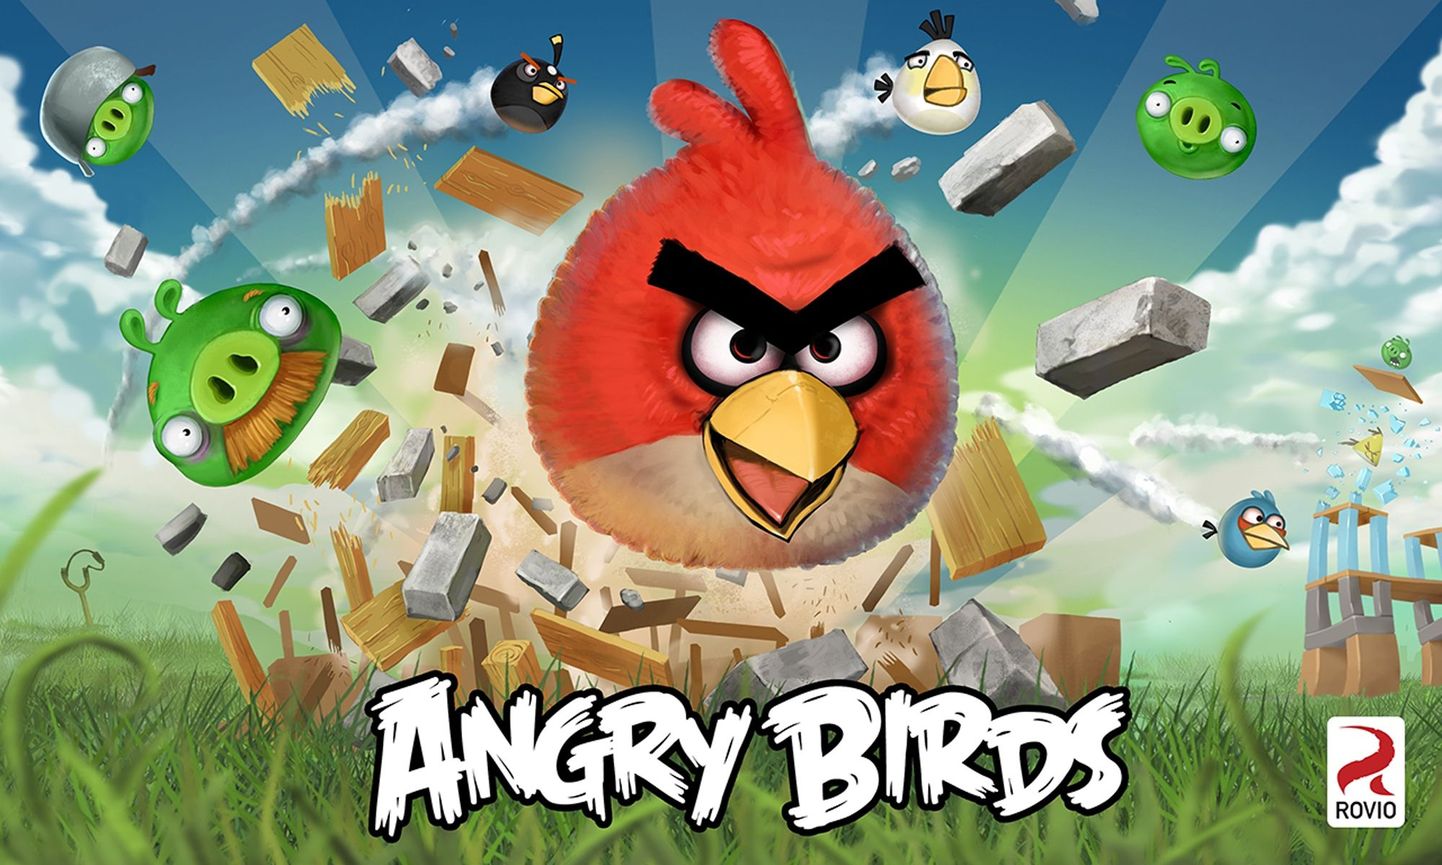 Angry Birds mängu tegelasele jäi Maal kitsaks?